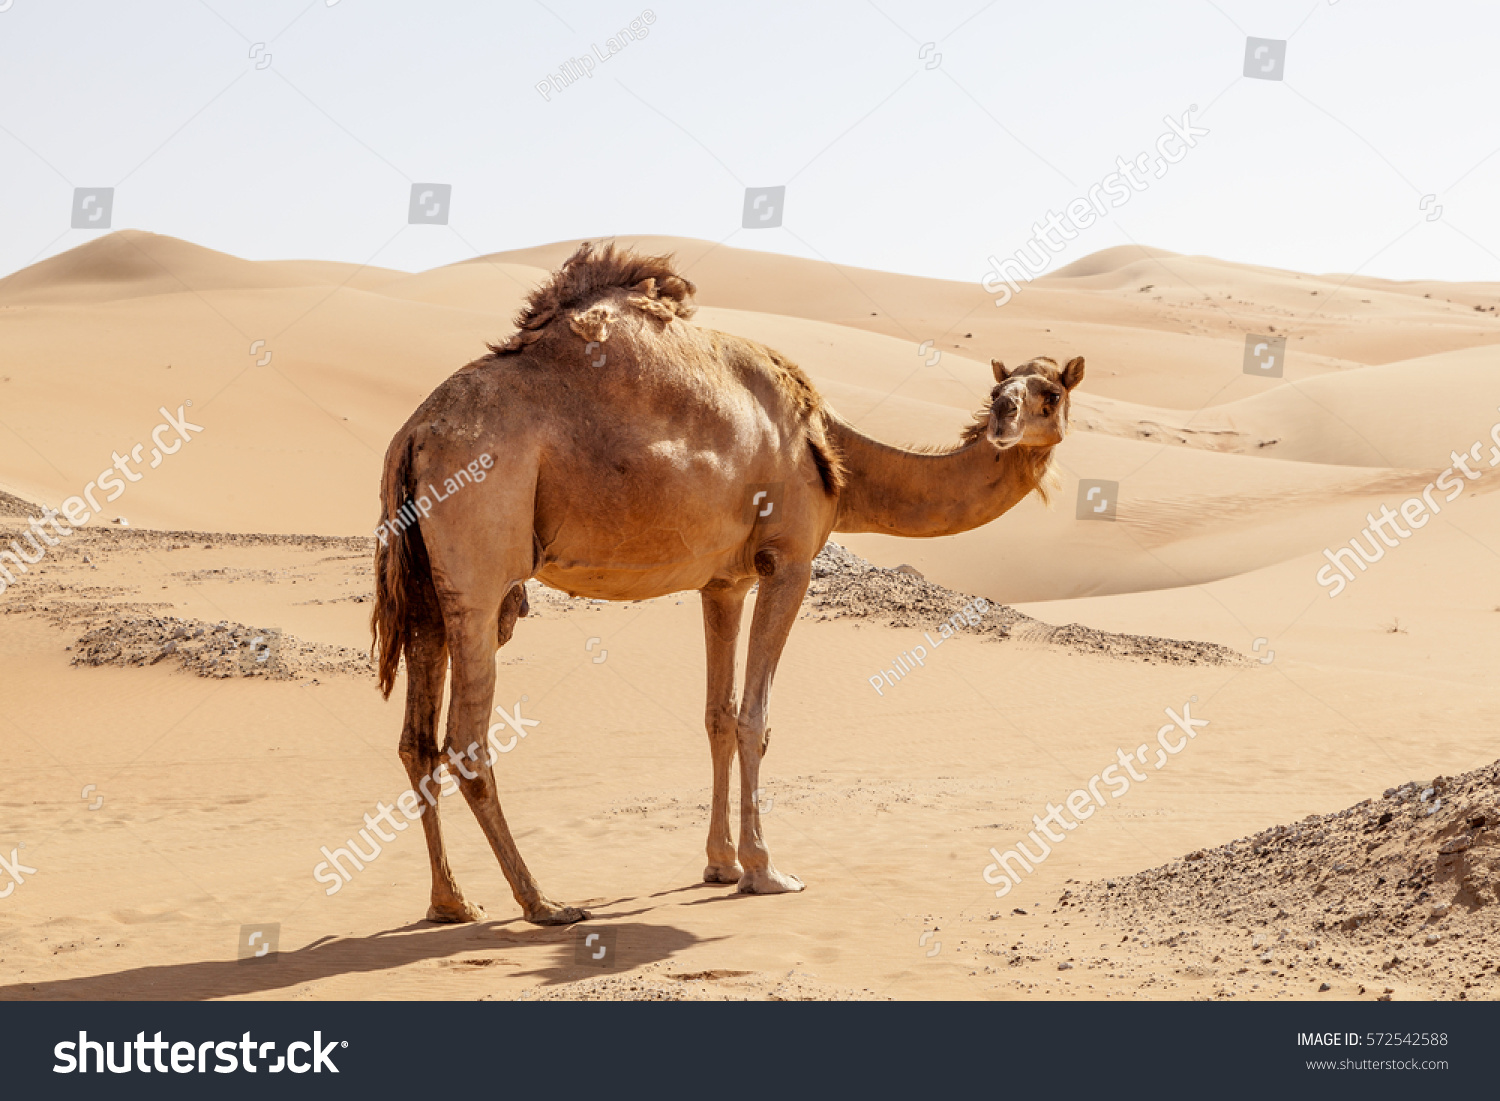 砂漠の砂丘の孤独なラクダ アラブ首長国連邦 アブダビ首長国連邦 リワオアシス地域 の写真素材 今すぐ編集